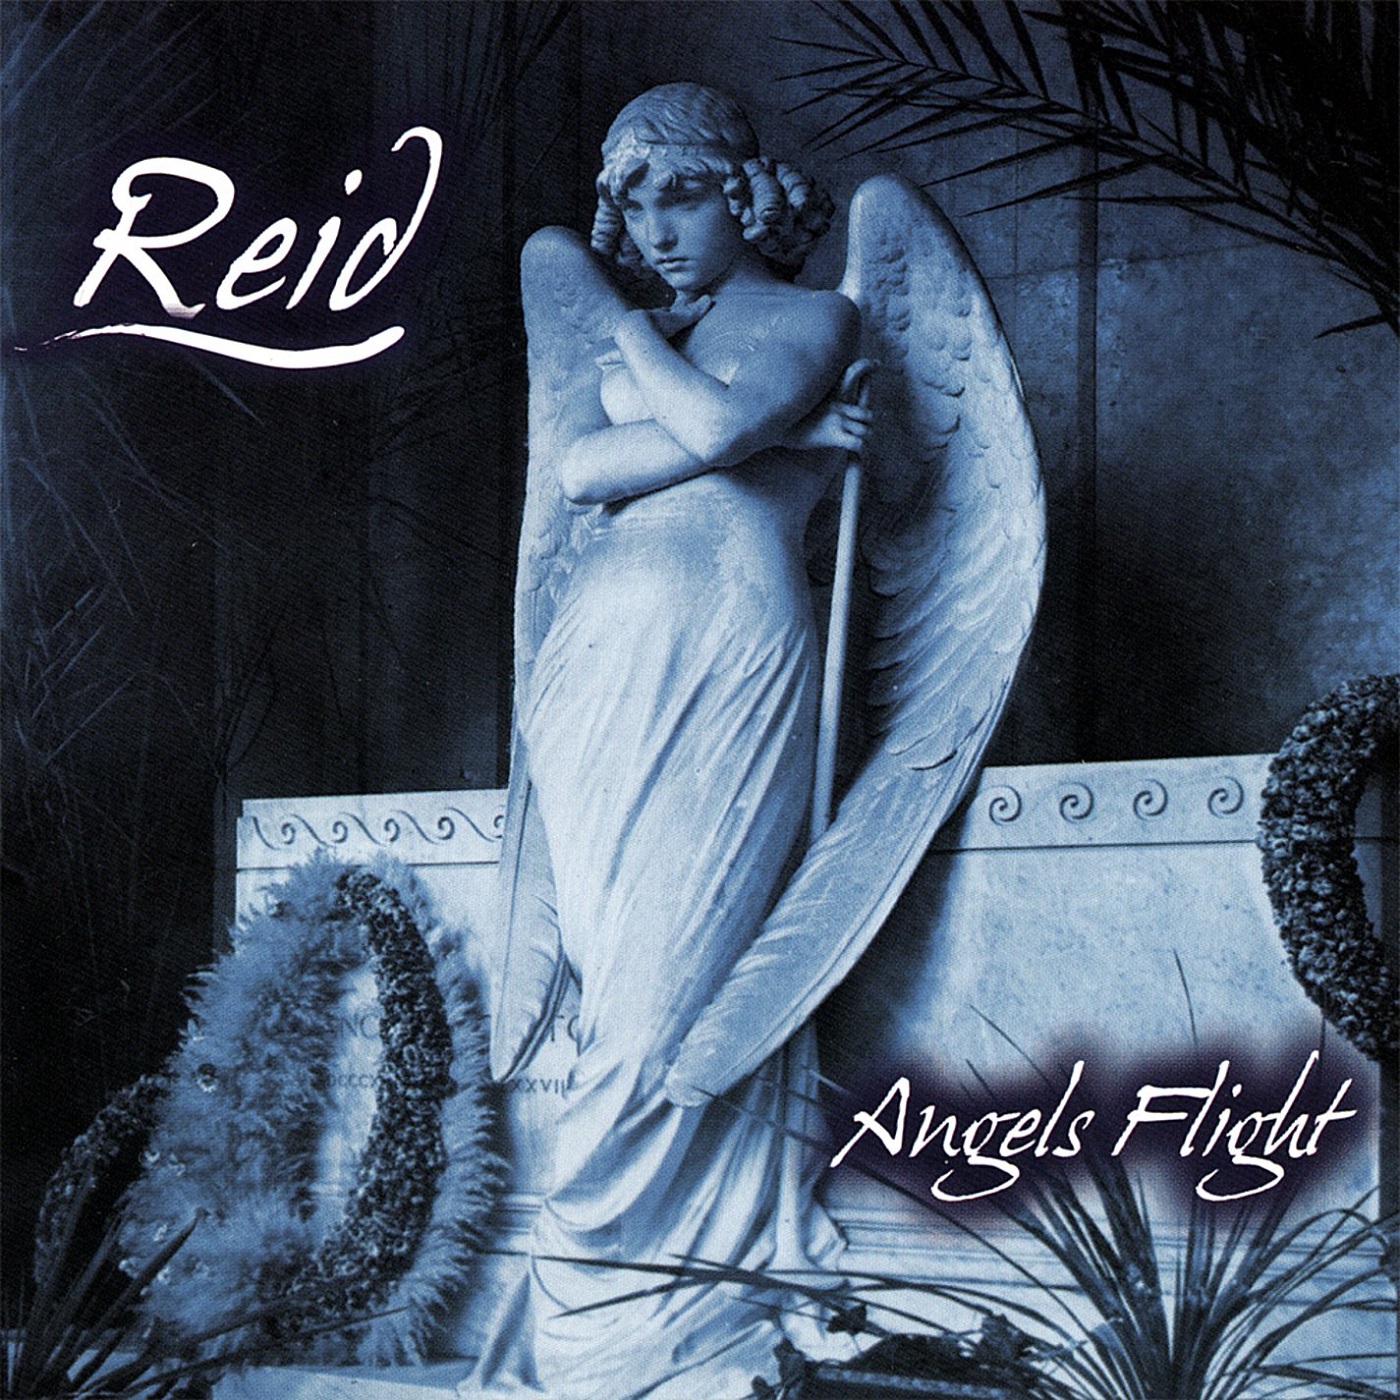 Reid - Angels Flight